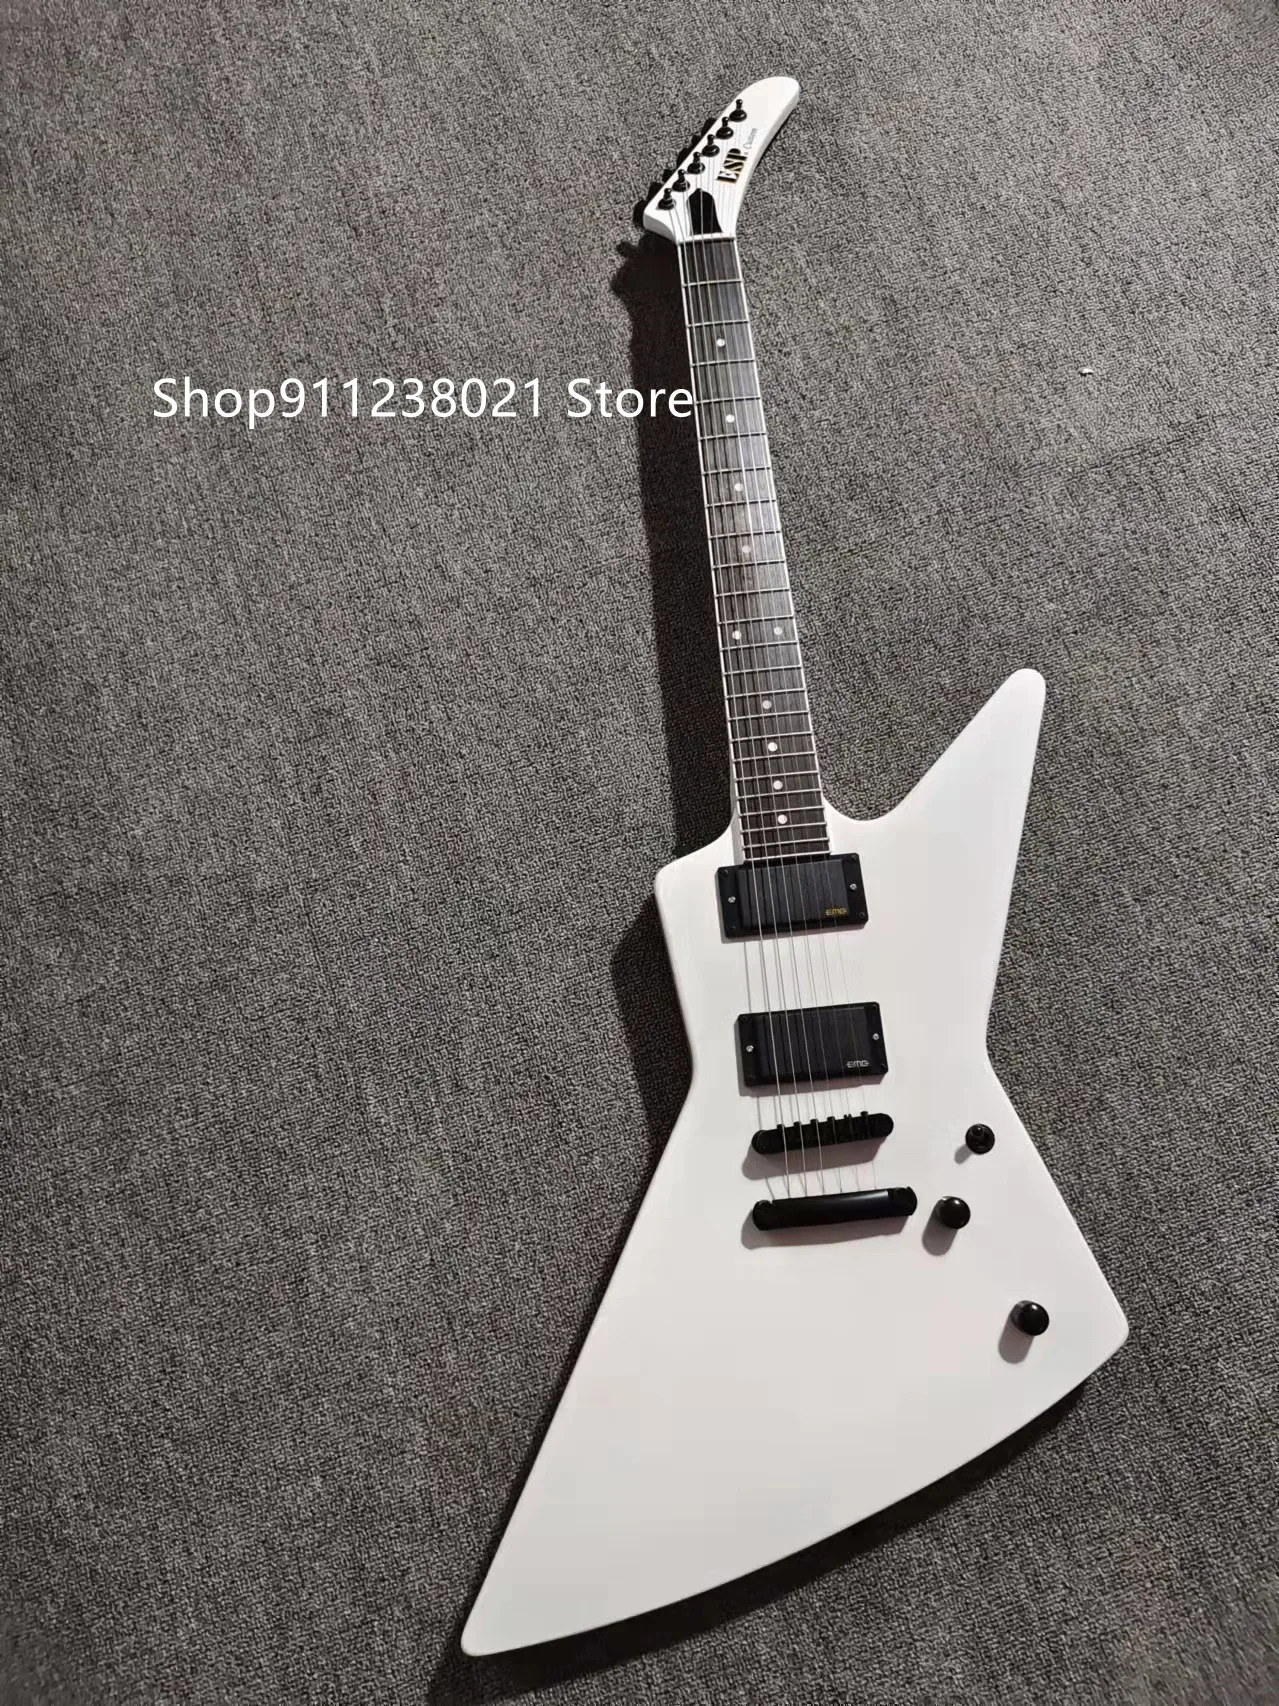 ¡Guitarra eléctrica en stock James Hetfield explorar EET mierda en stock you will receive lo que ve... de guitarra de calidad!